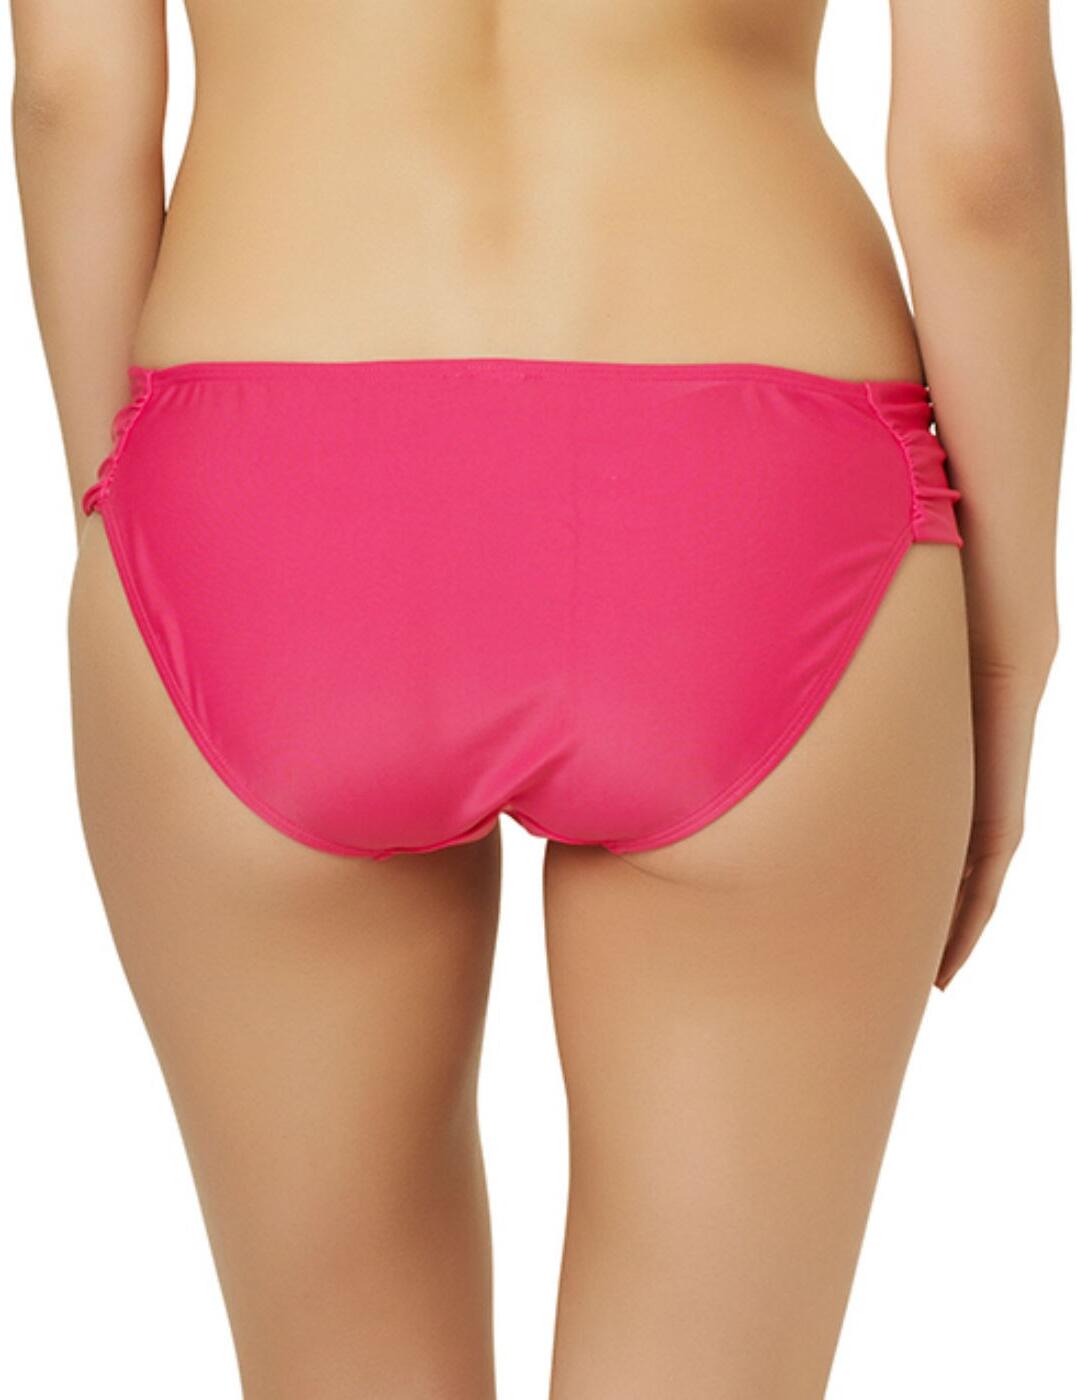 CW0026 Cleo Swimwear Dolly Gather Bikini Pant - CW0026 Strawberry 